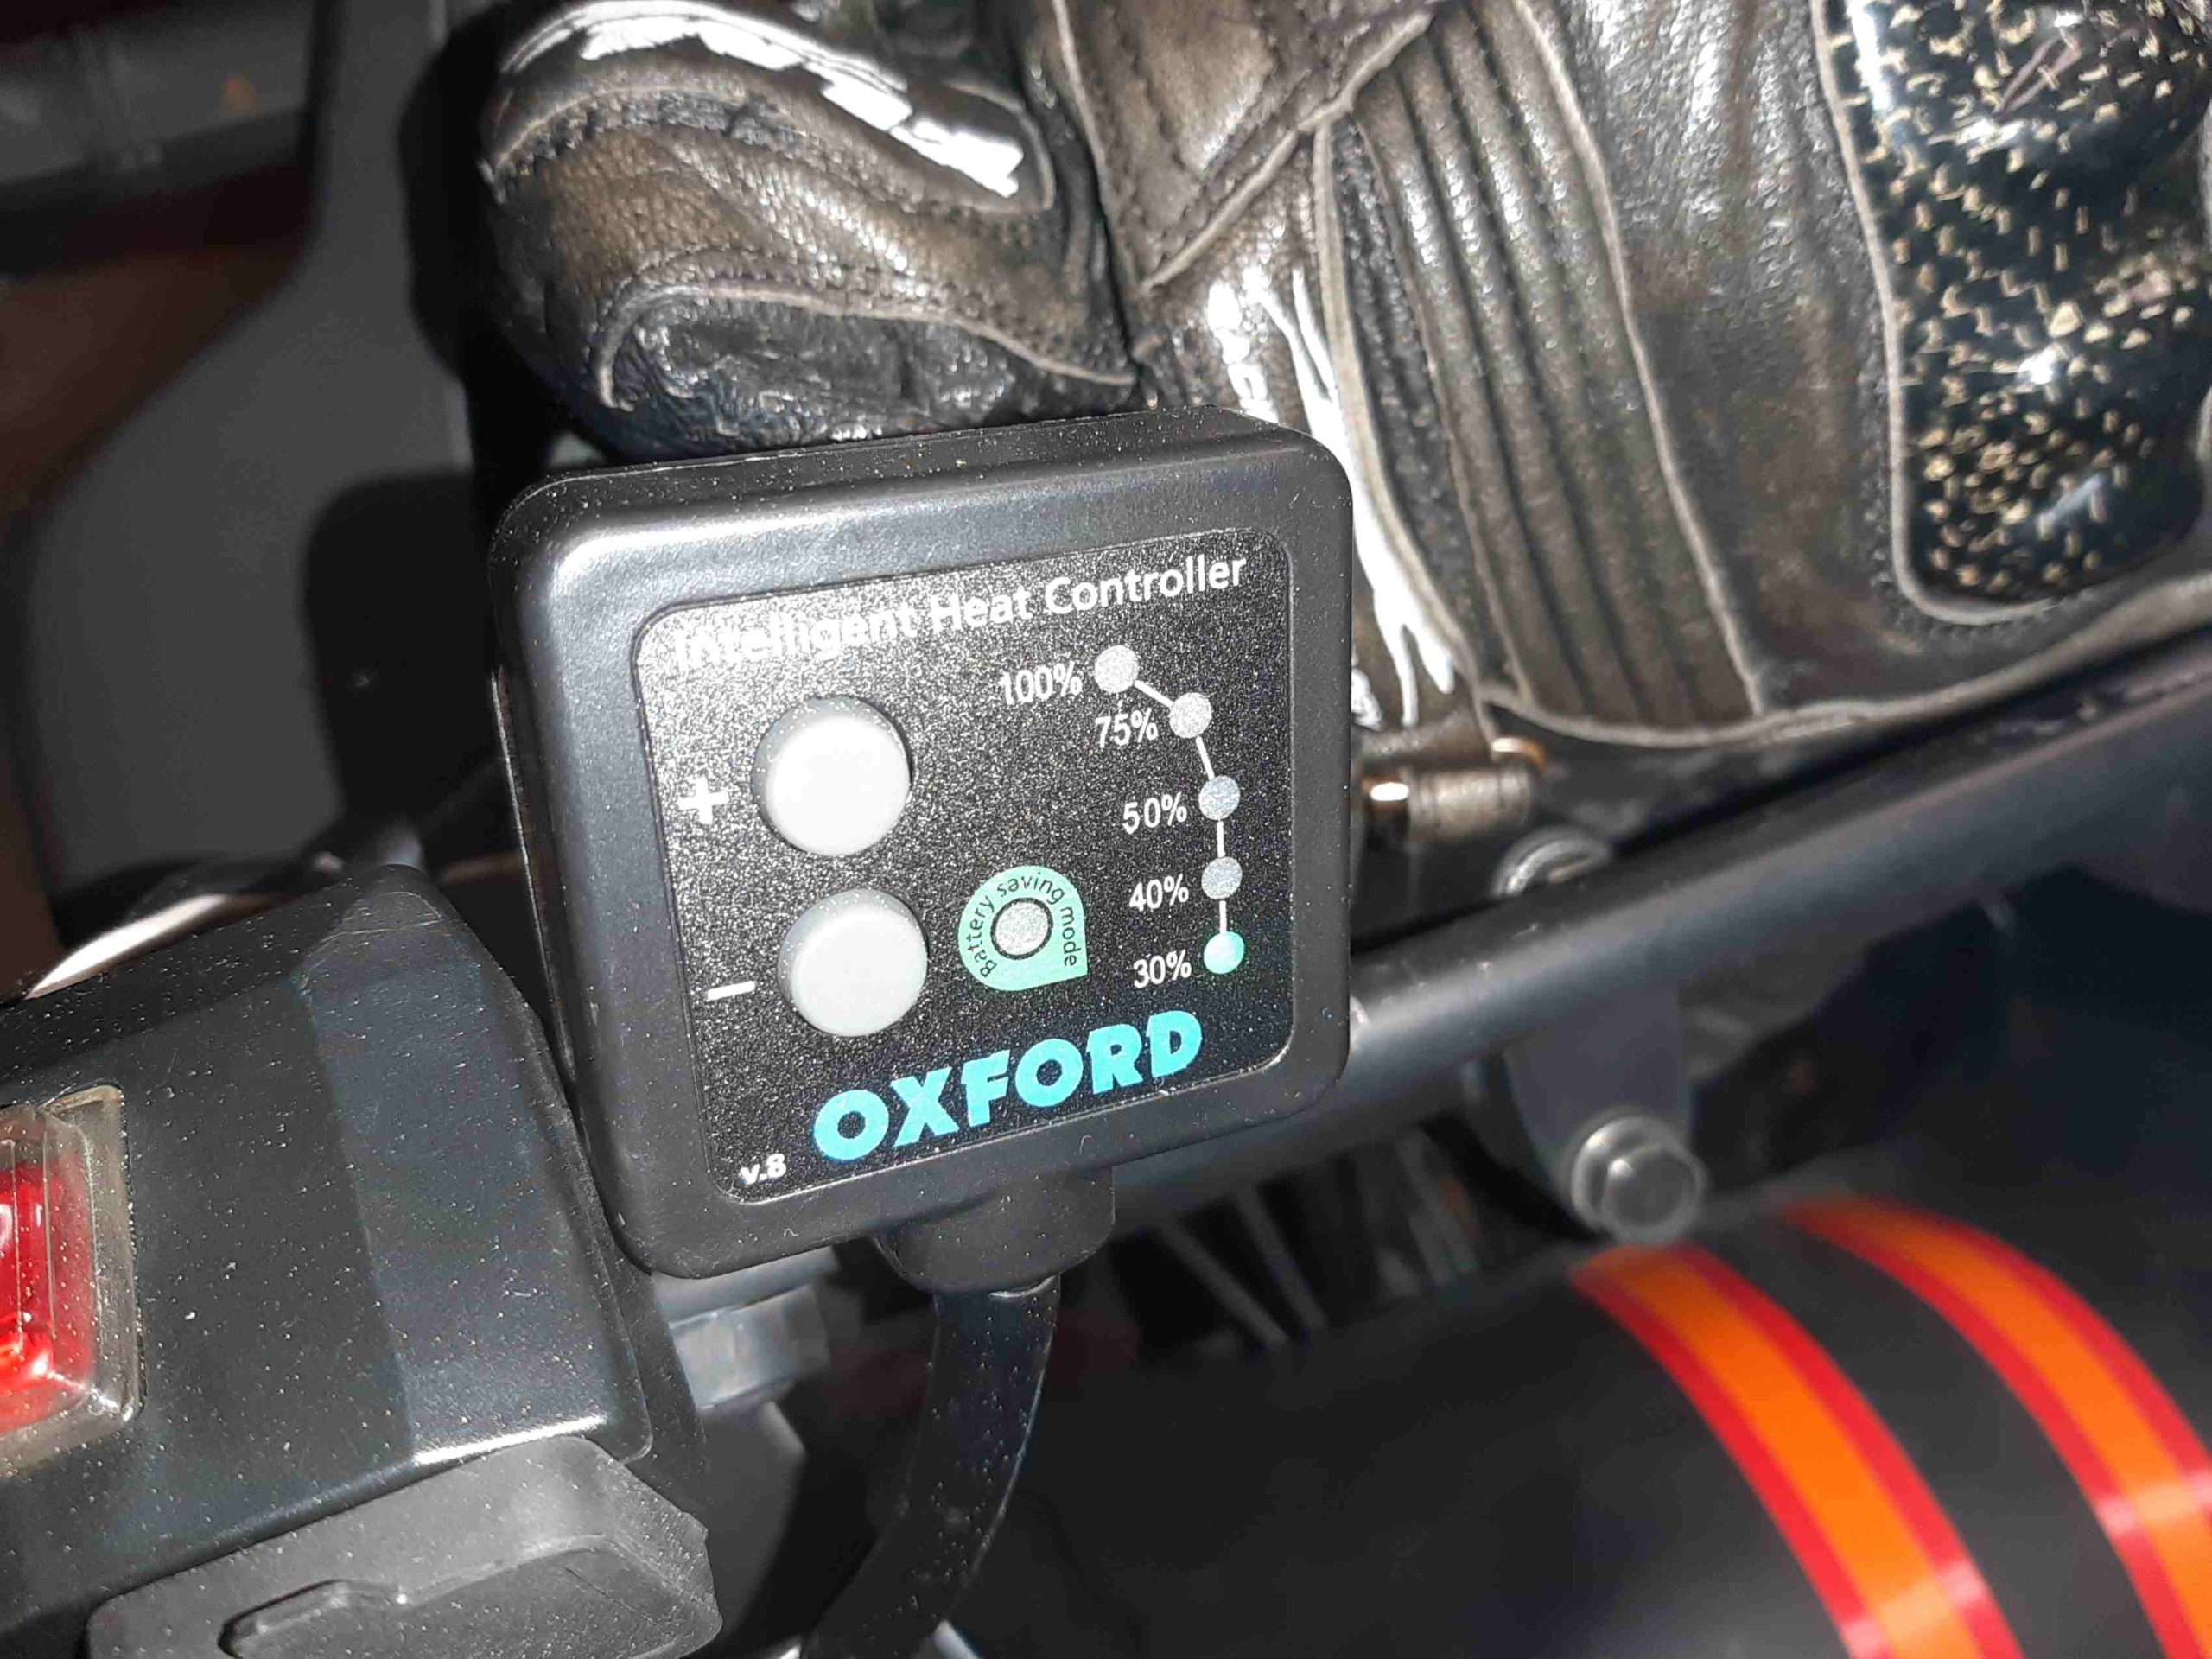 Die Oxford-Heizgriffe: Erfahrungen nach dem Winter - Motorrad-Tour-Online